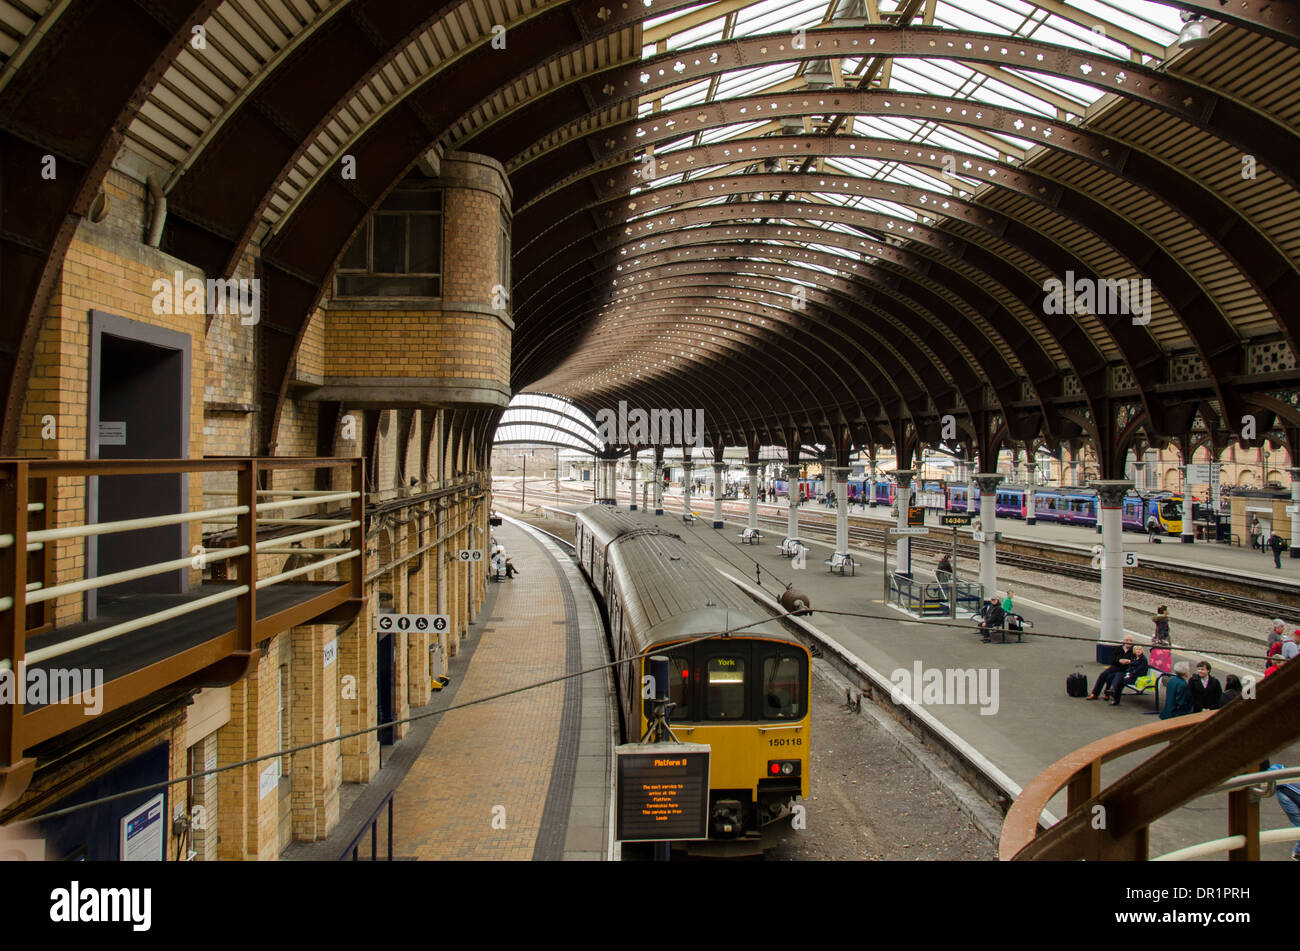 Vista interna di trainshed con ferro e il tetto in vetro fisso, treni & persone in attesa su platfom - La stazione ferroviaria di York, North Yorkshire, Inghilterra, Regno Unito. Foto Stock